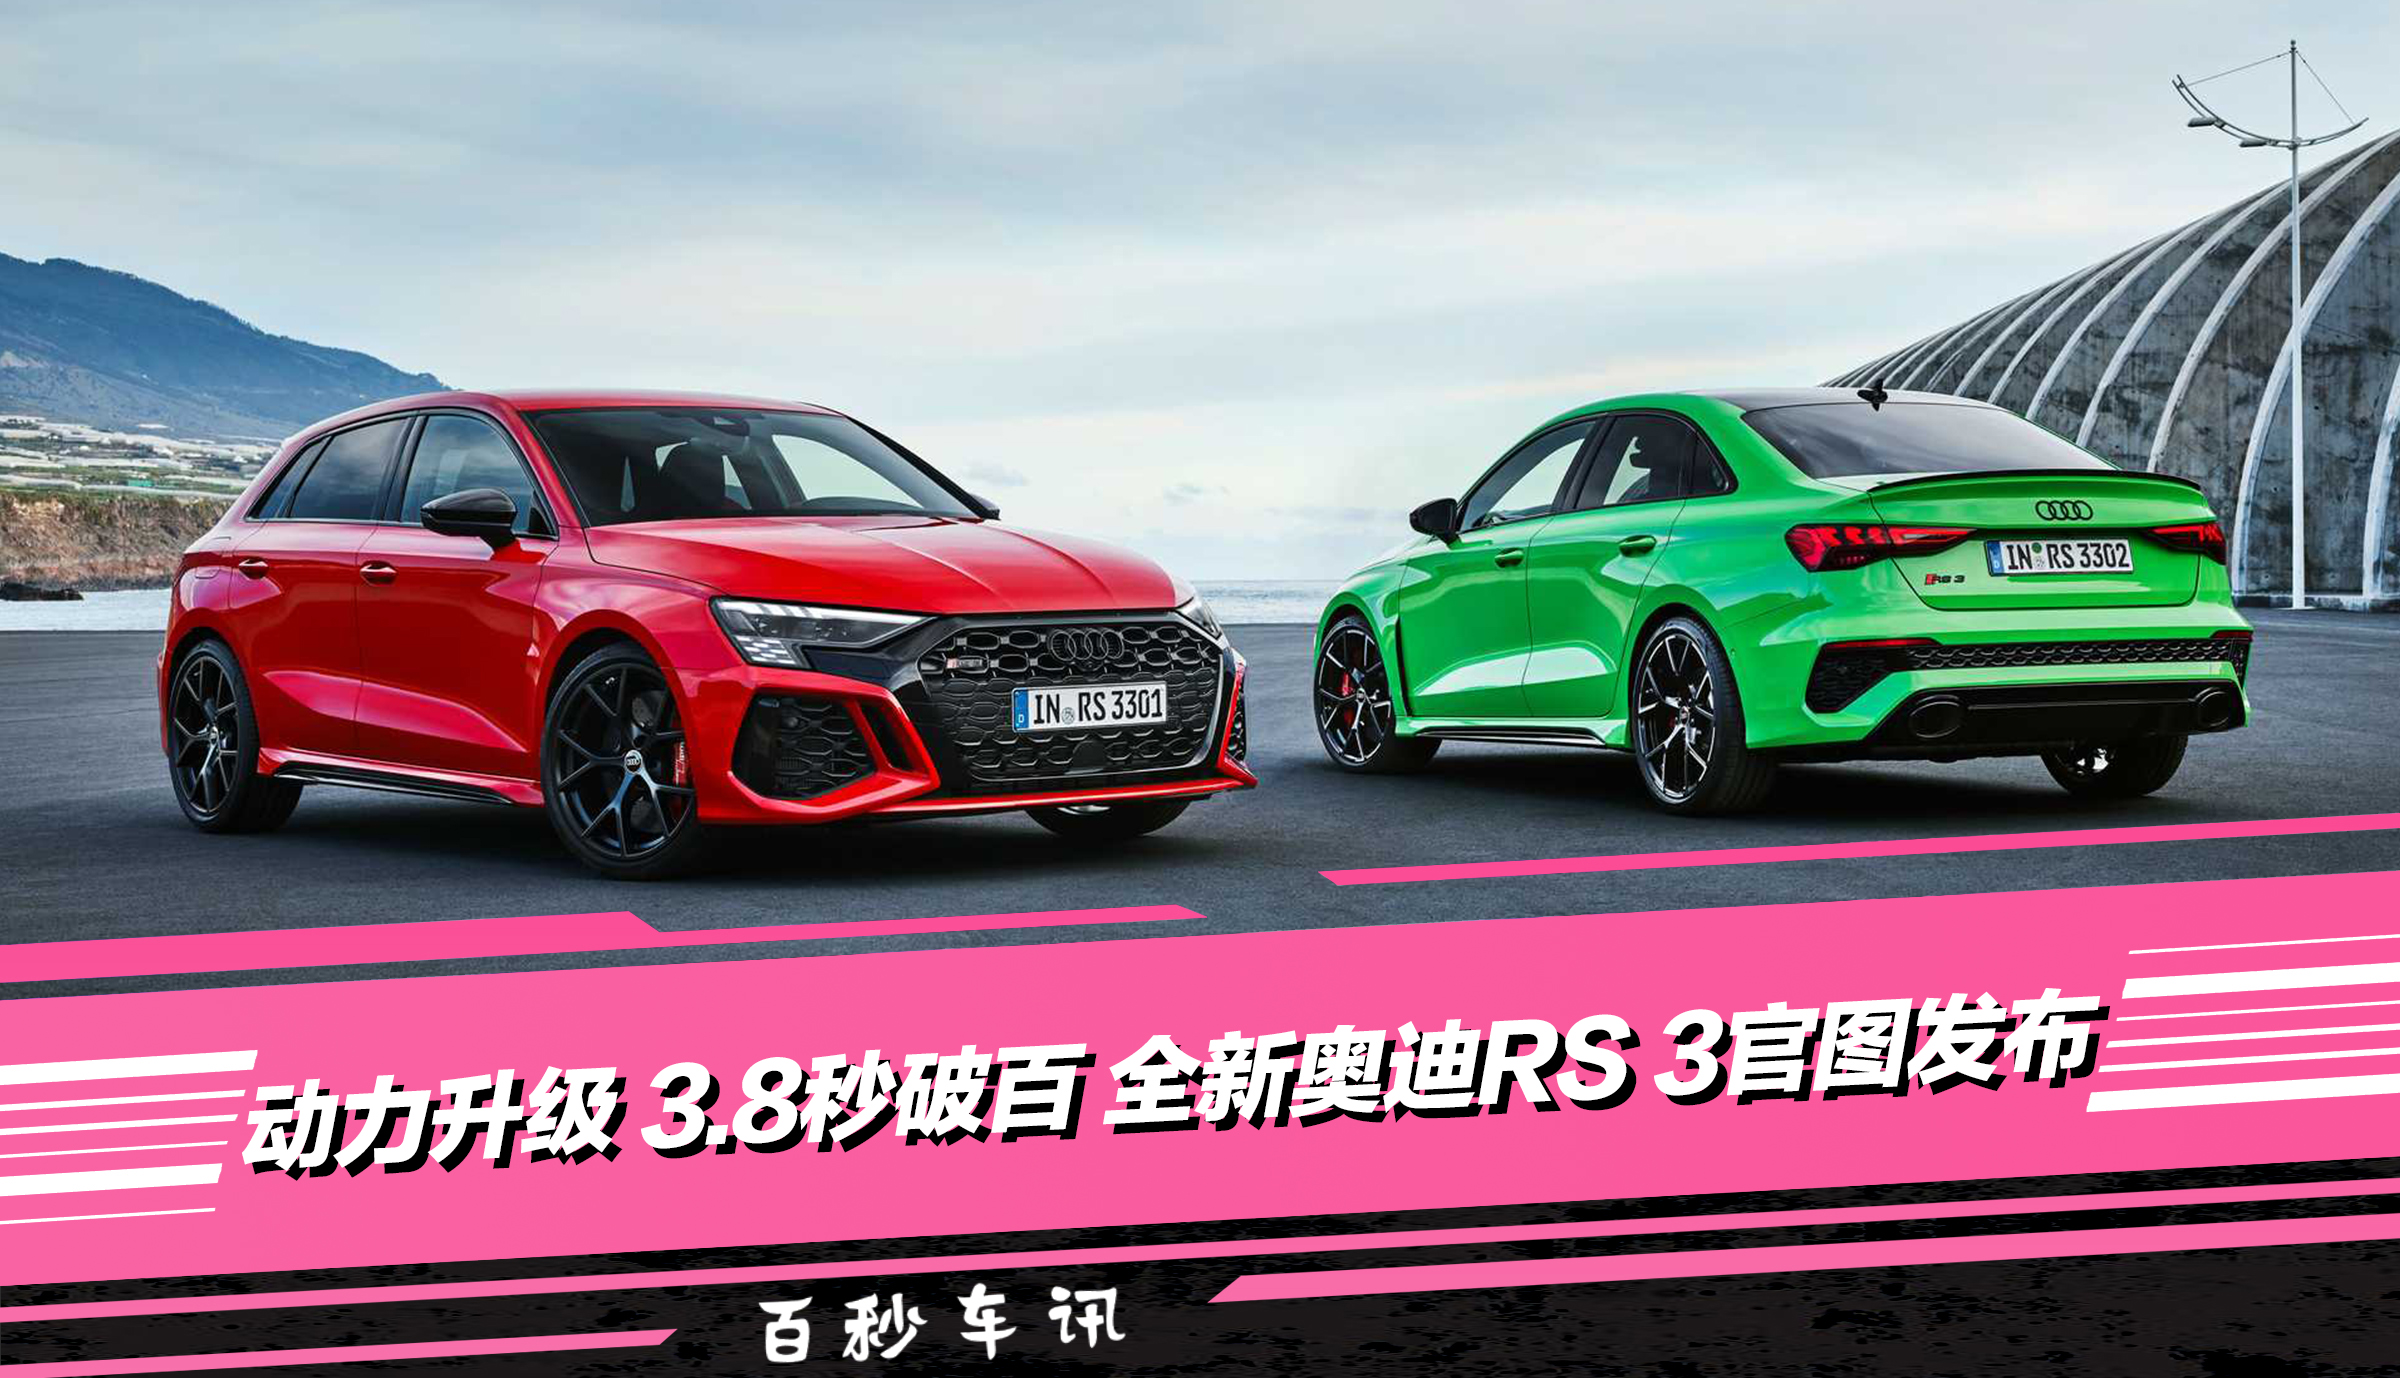 奥迪rs 3 21年最新款 报价 图片 Audi Sport 爱卡汽车